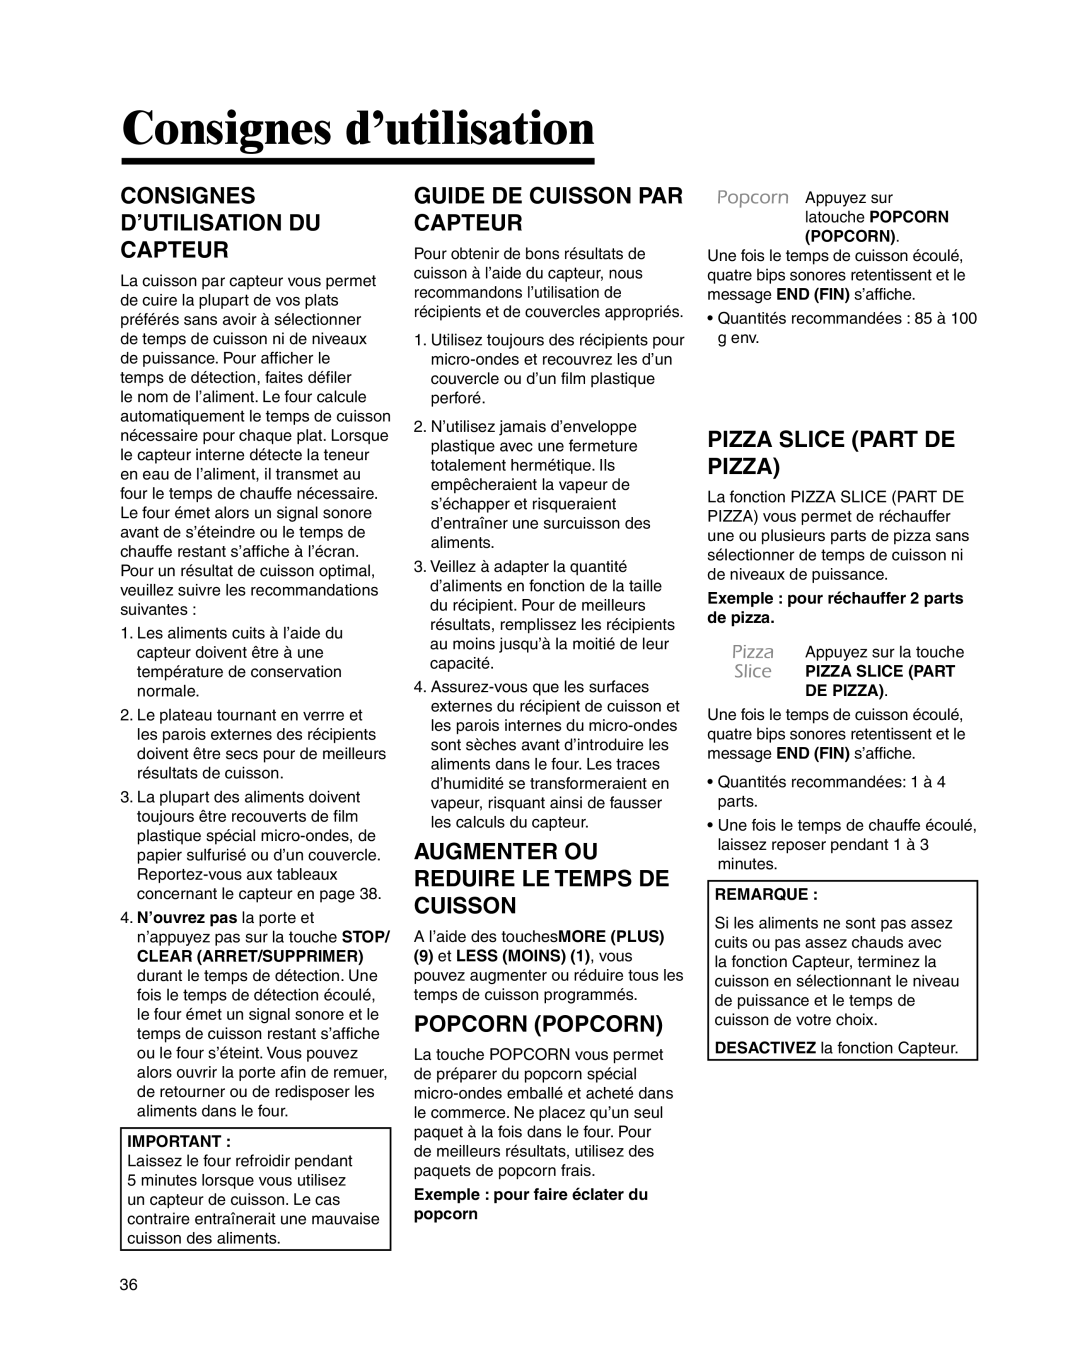 Maytag UMC5200BCS, UMC5200BCW Consignes D’Utilisation Du Capteur, Guide De Cuisson Par Capteur, Popcorn Popcorn, Remarque 